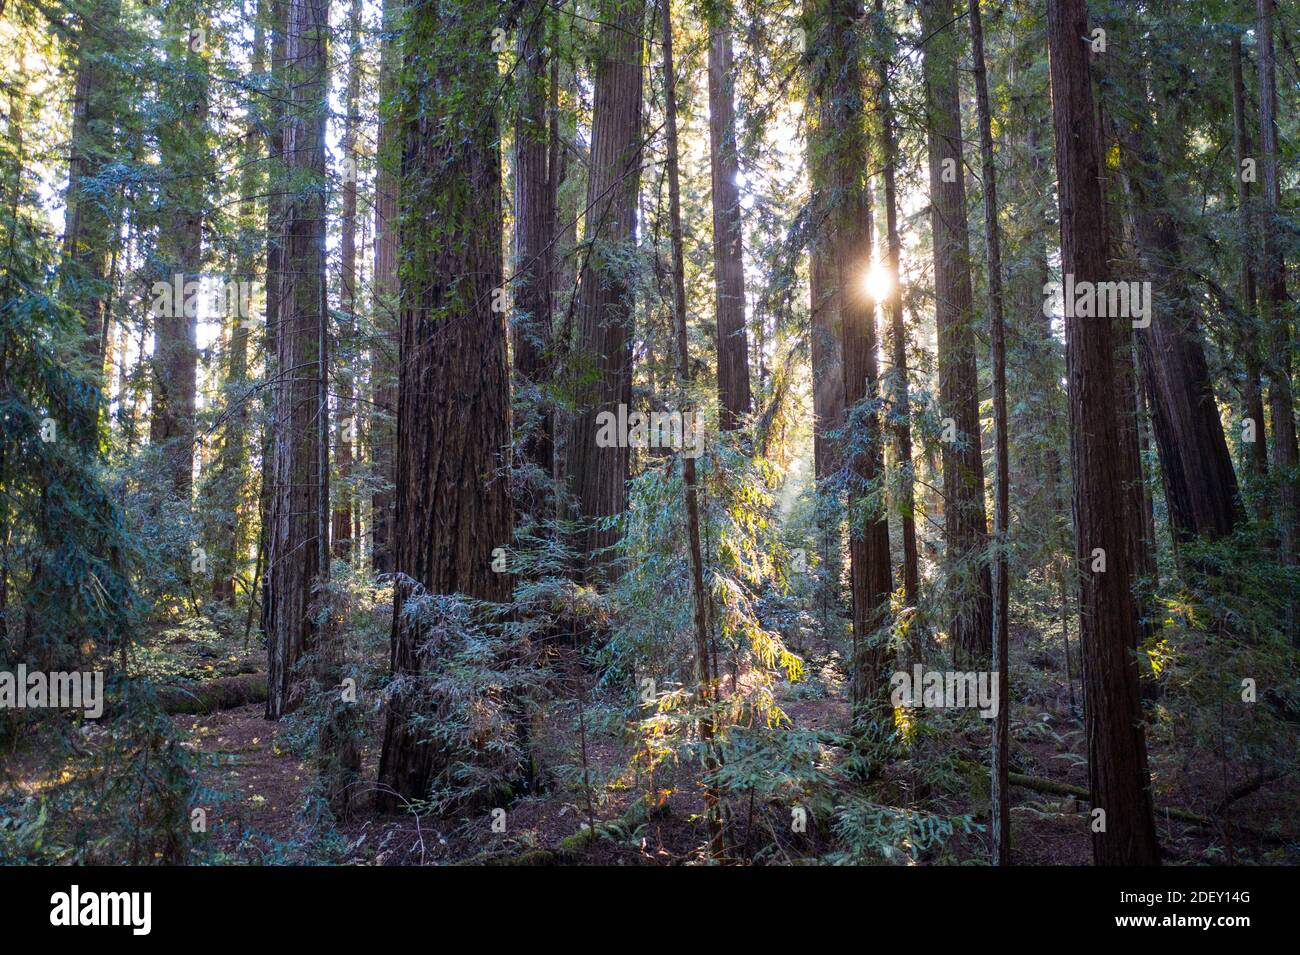 La luce del sole scende in una foresta di sequoie, Sequoia sempervirens, nel nord della California. Le sequoie sono considerate gli alberi più grandi della Terra. Foto Stock